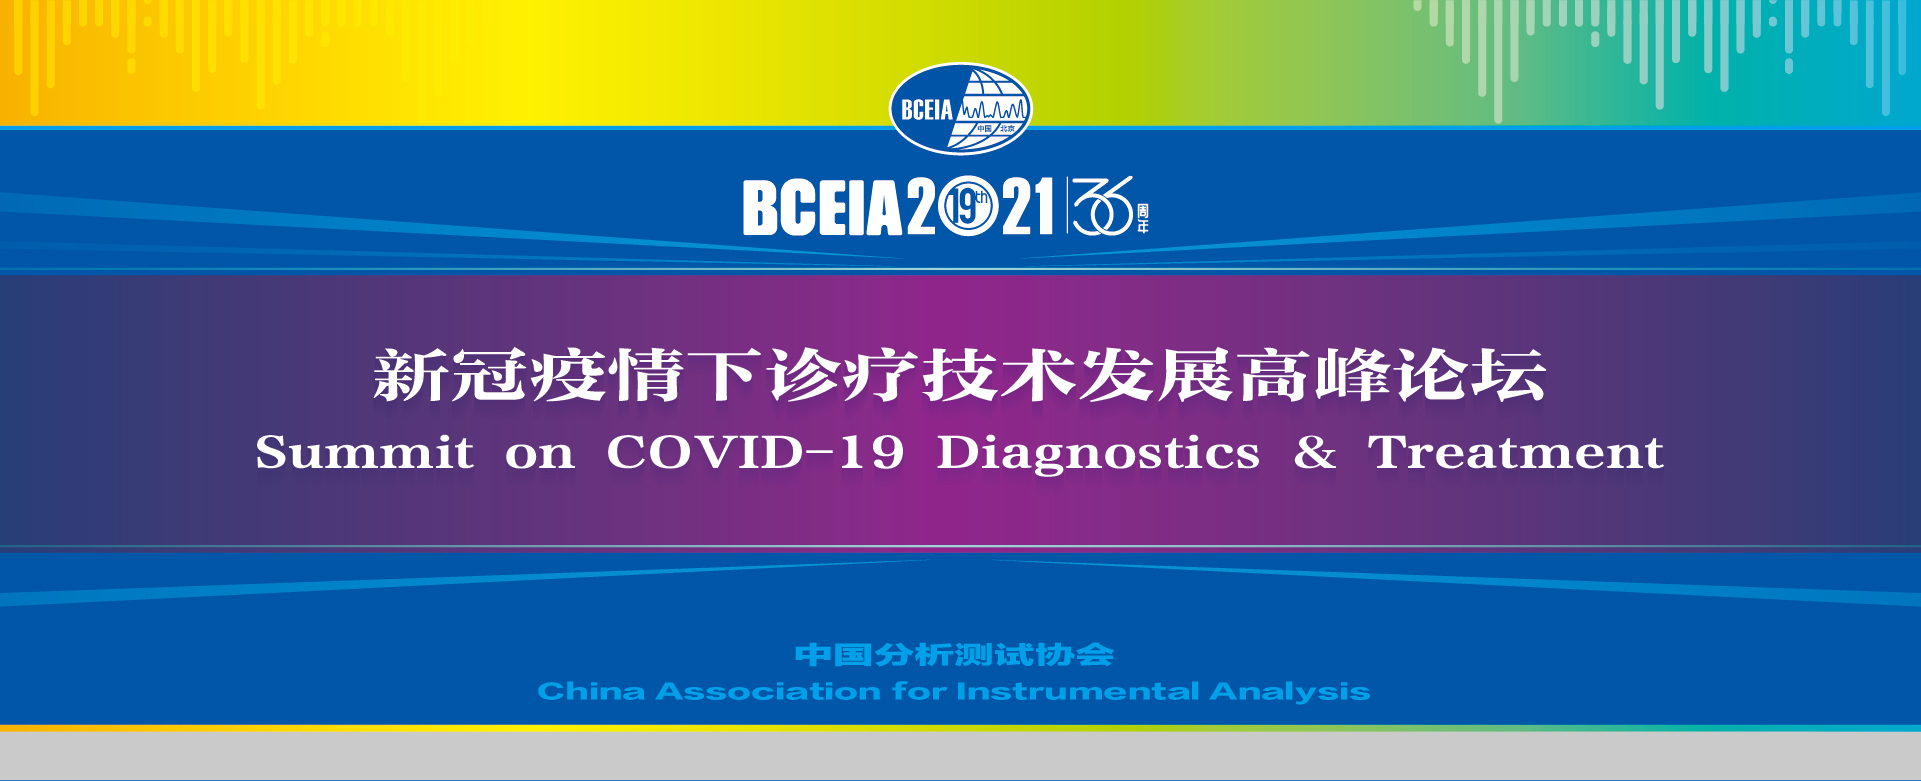 "Summit on COVID-19 Diagnostics & Treatment"